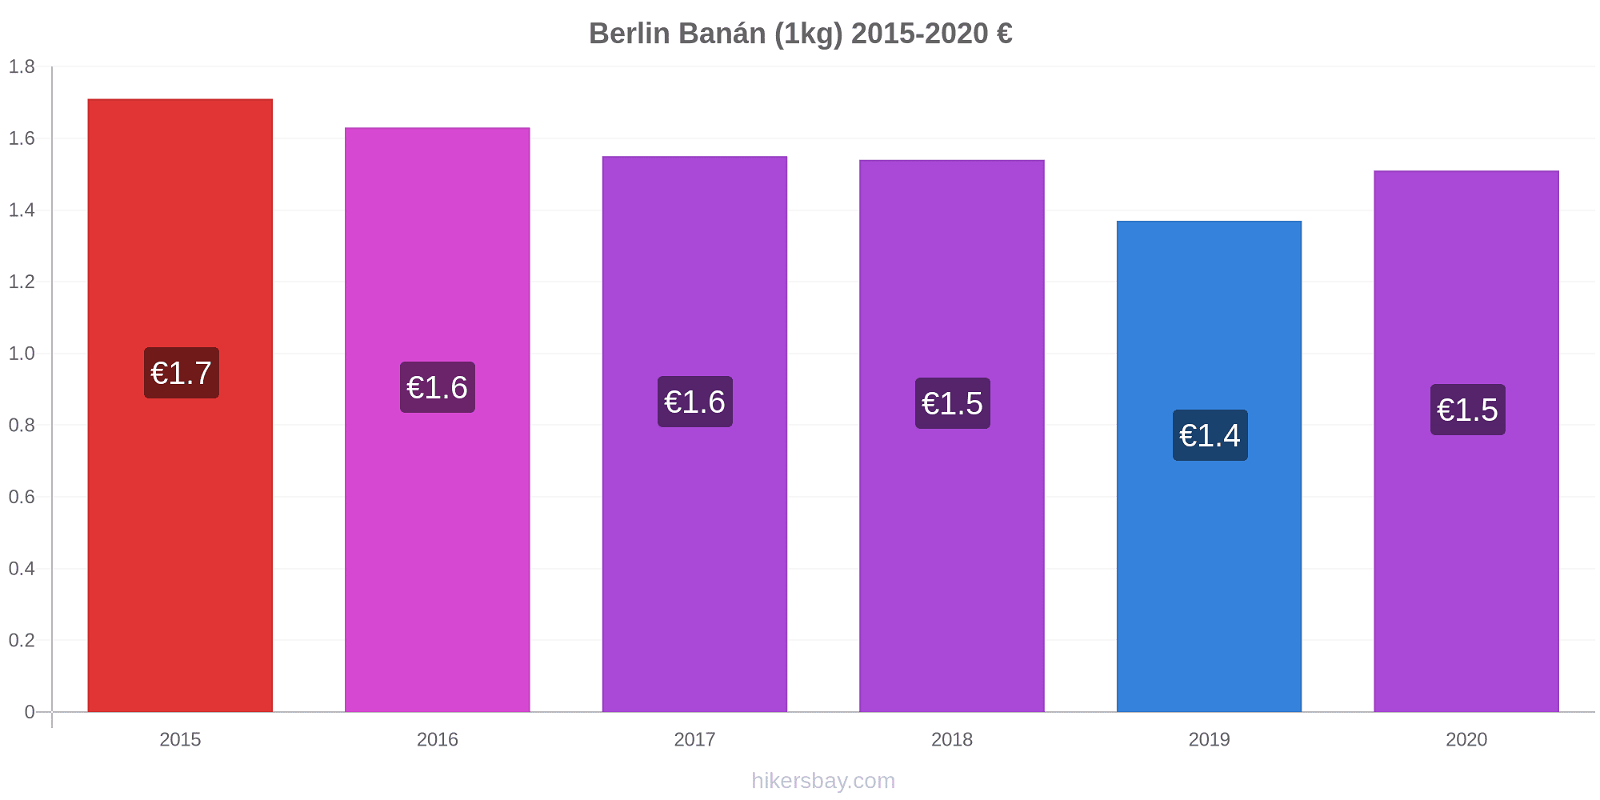 Berlin árváltozások Banán (1kg) hikersbay.com